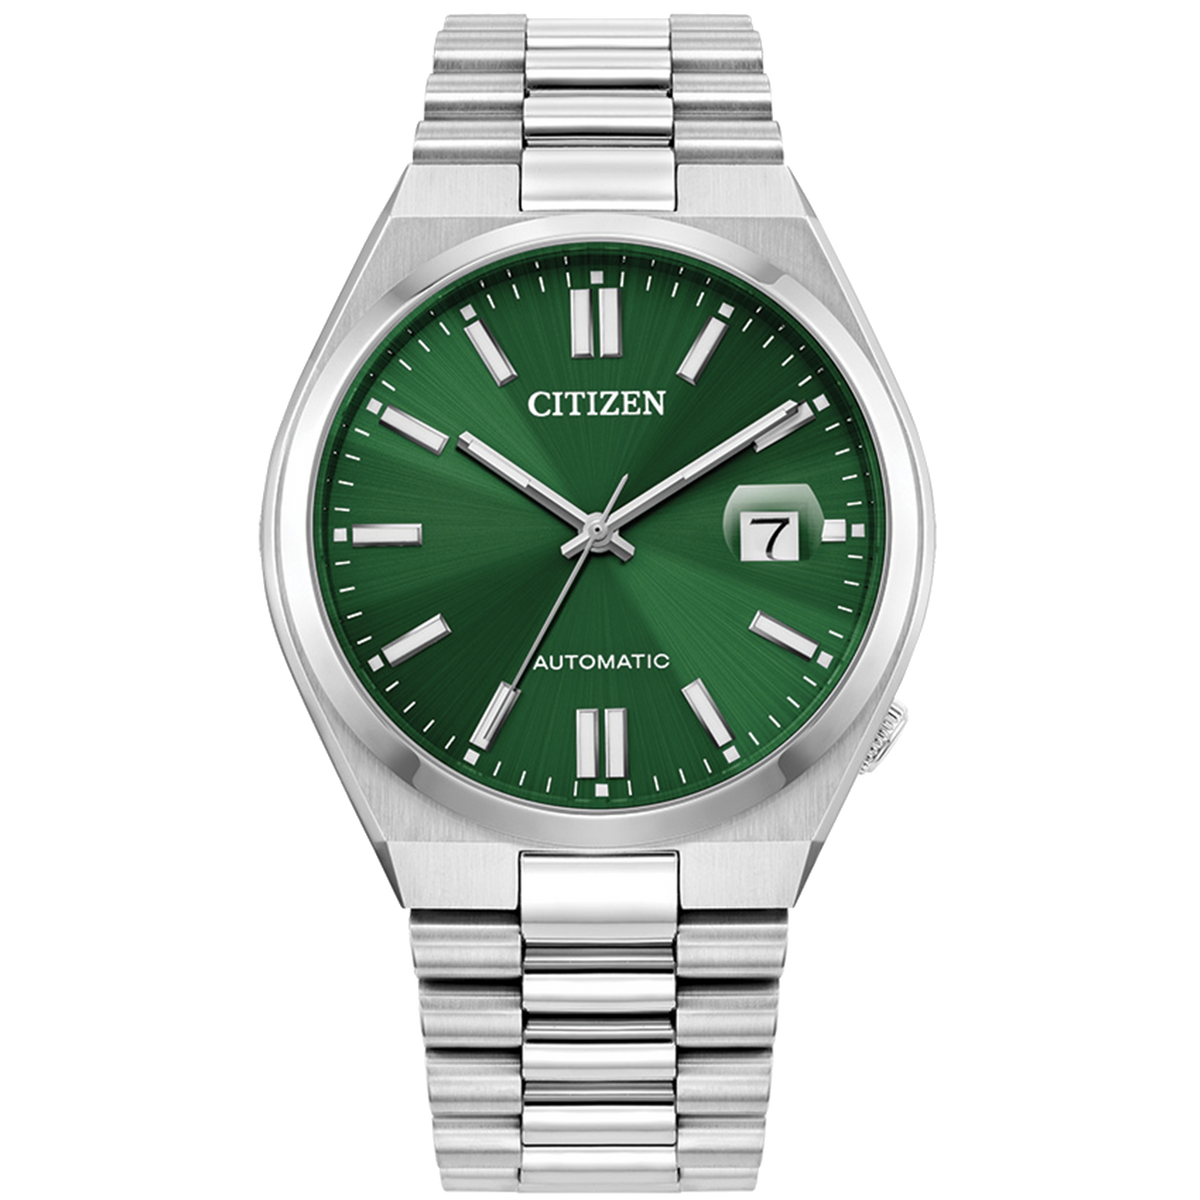 Citizen Automatic - ‘TSUYOSA’ - Green Dial